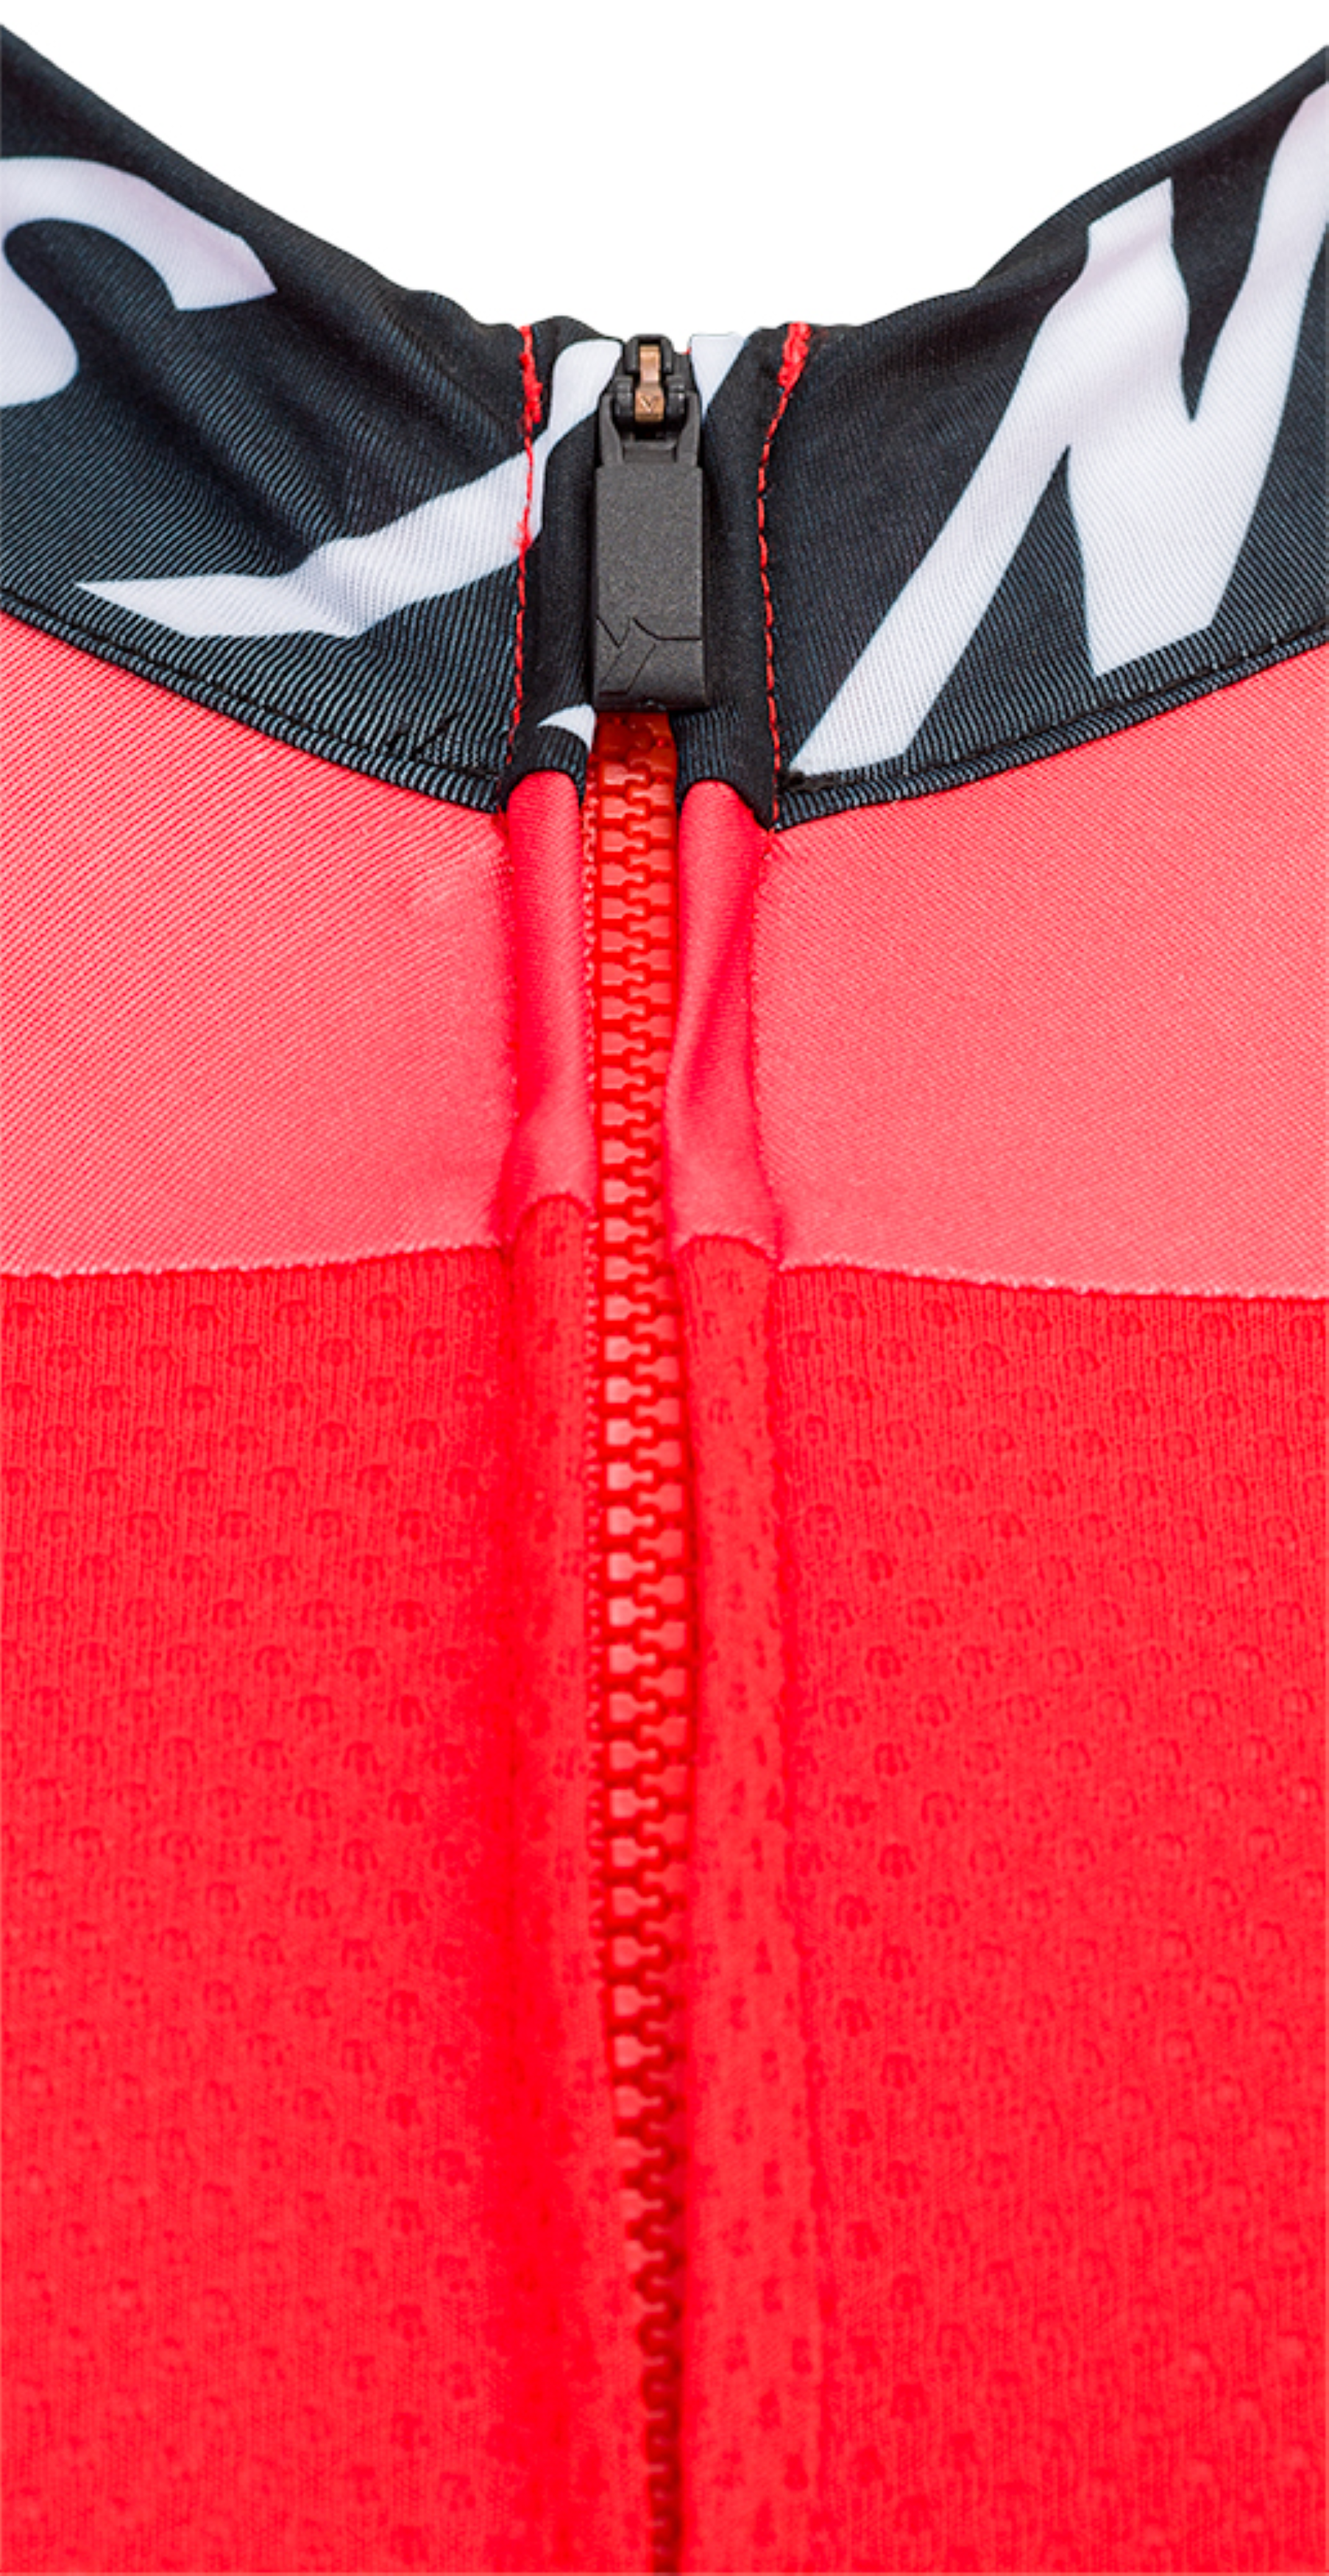 Vyriški dviratininko marškinėliai Silvini Stelvio / Red